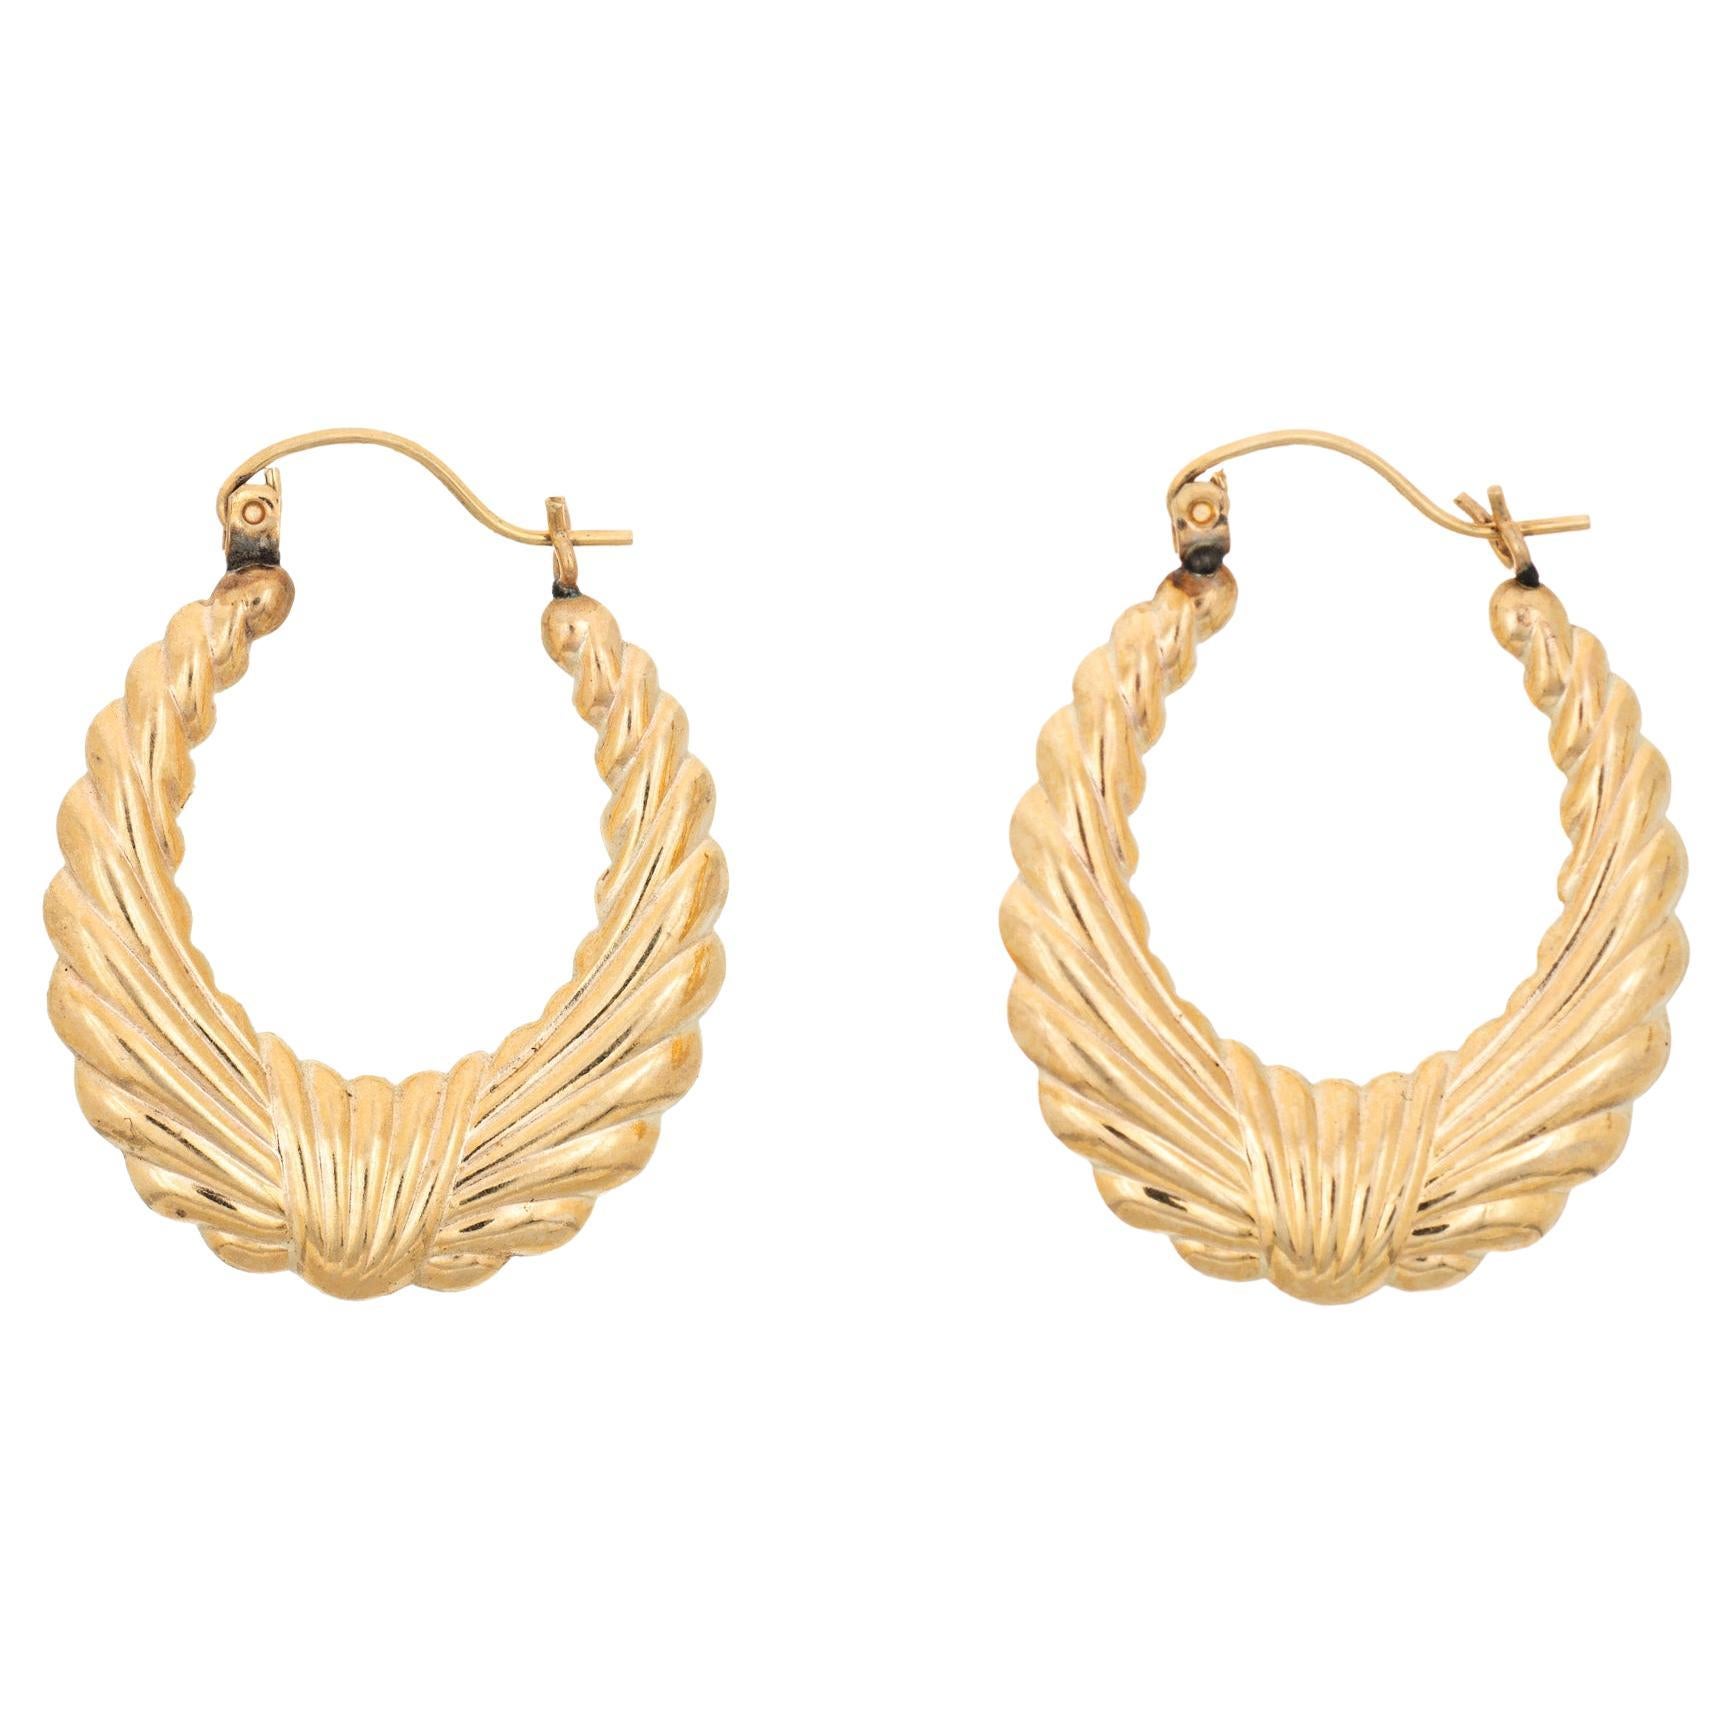 Oval Wreath Hoop Earrings Vintage 14k Yellow Gold 1" Drops Estate Jewelry